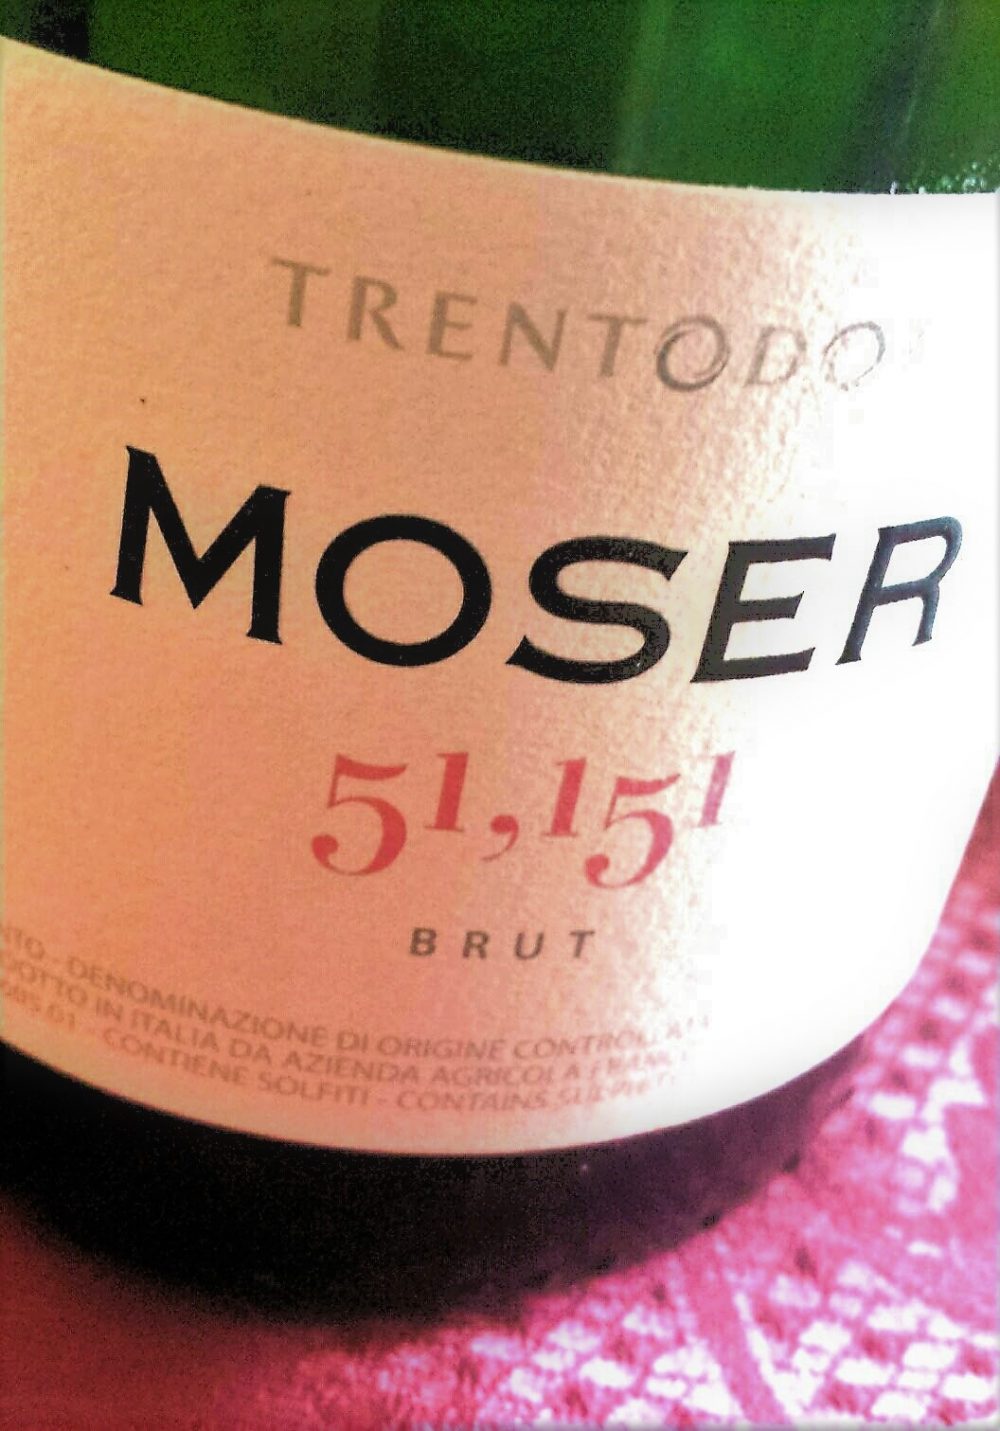 Trento Brut 51.151, Moser